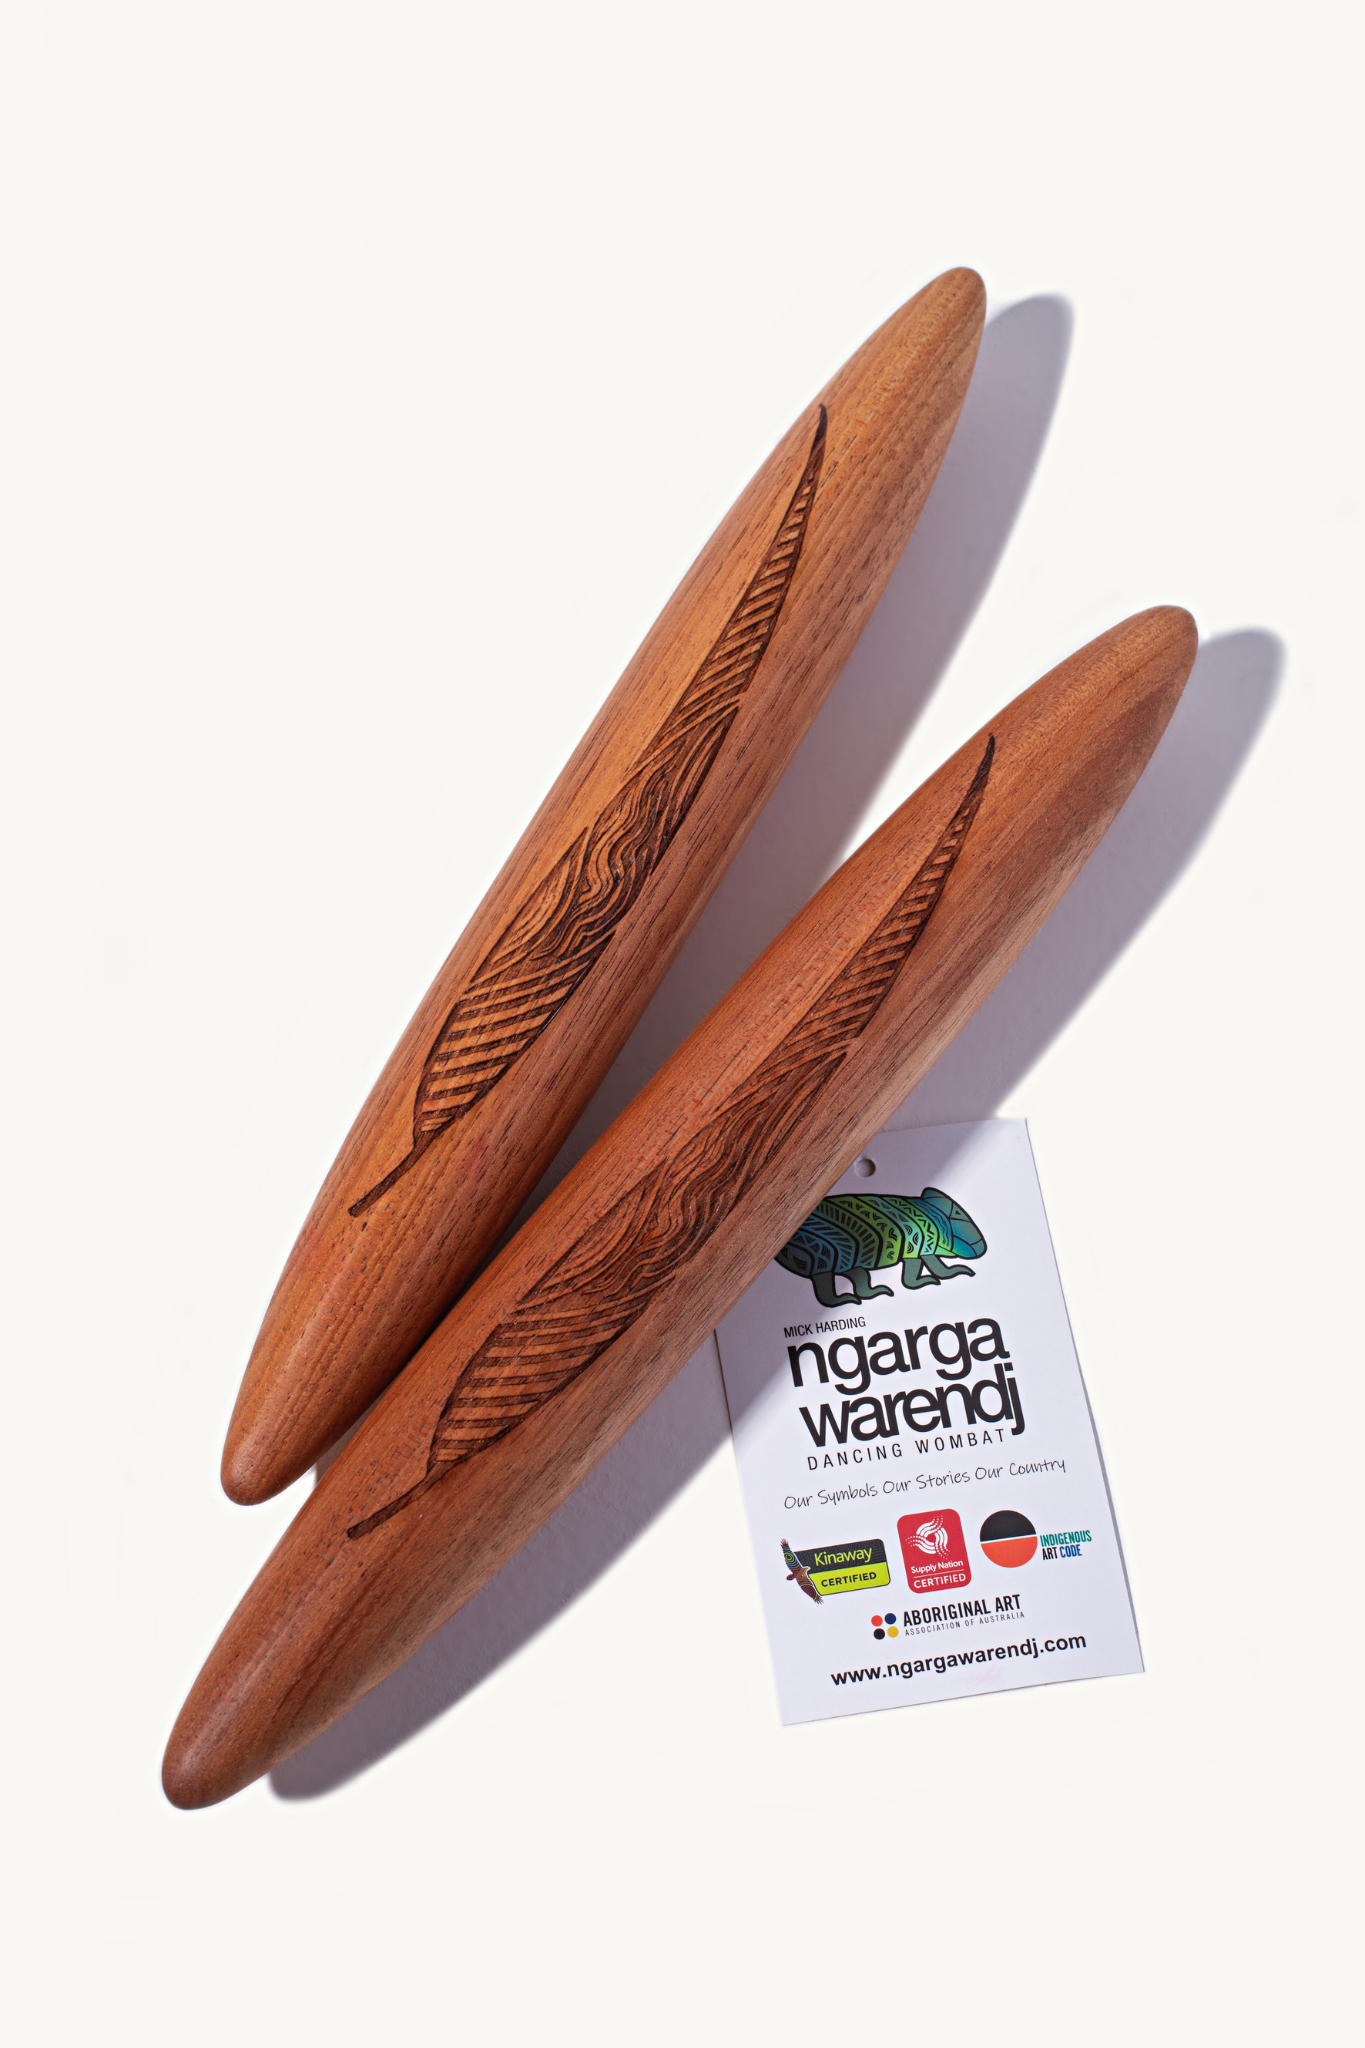 Aboriginal Clapsticks With Gum Leaves